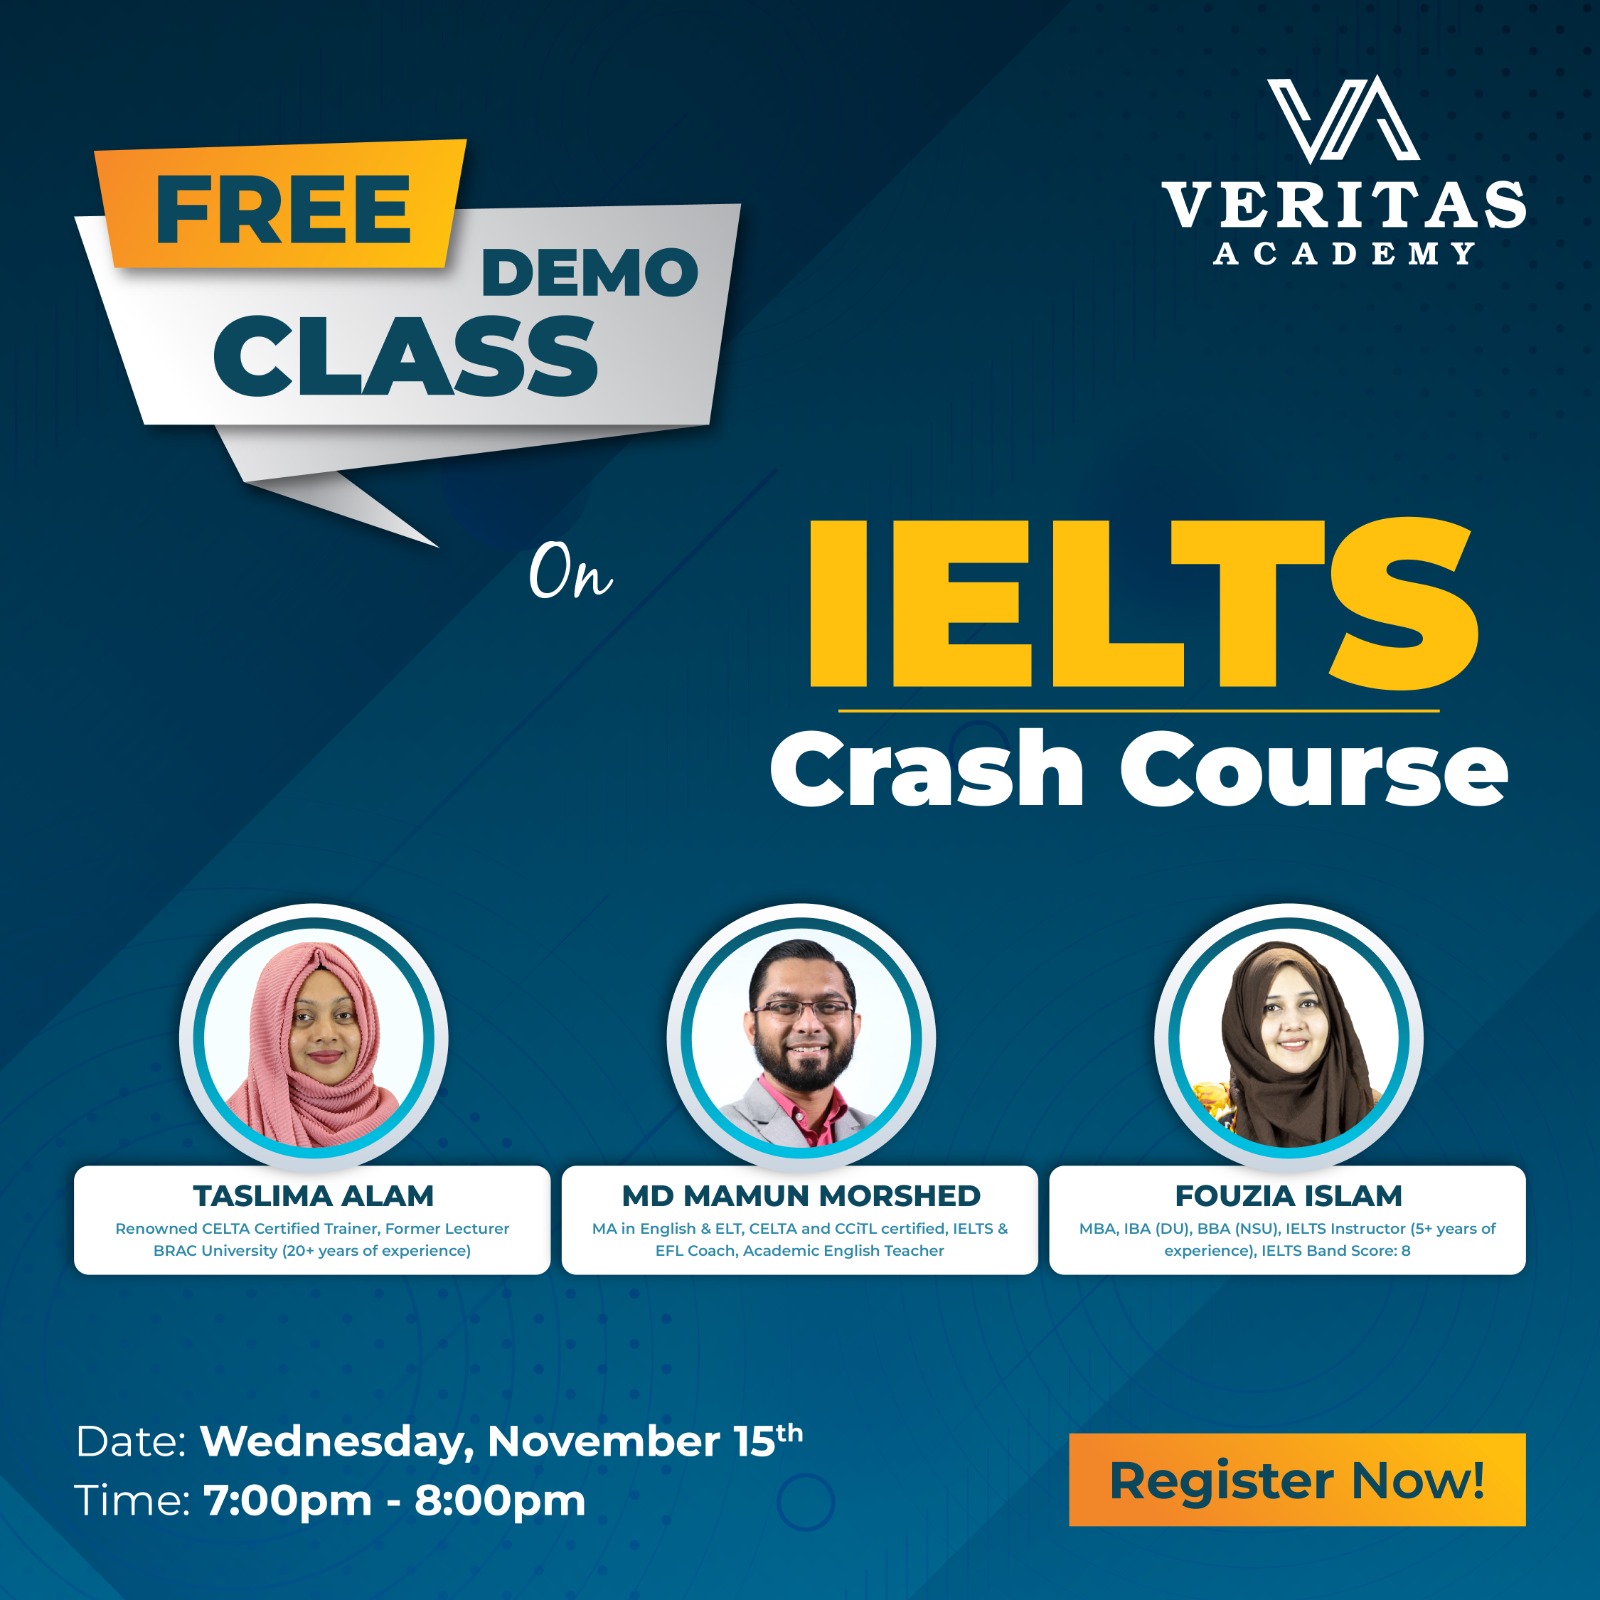 IELTS Crash Course Demo Class